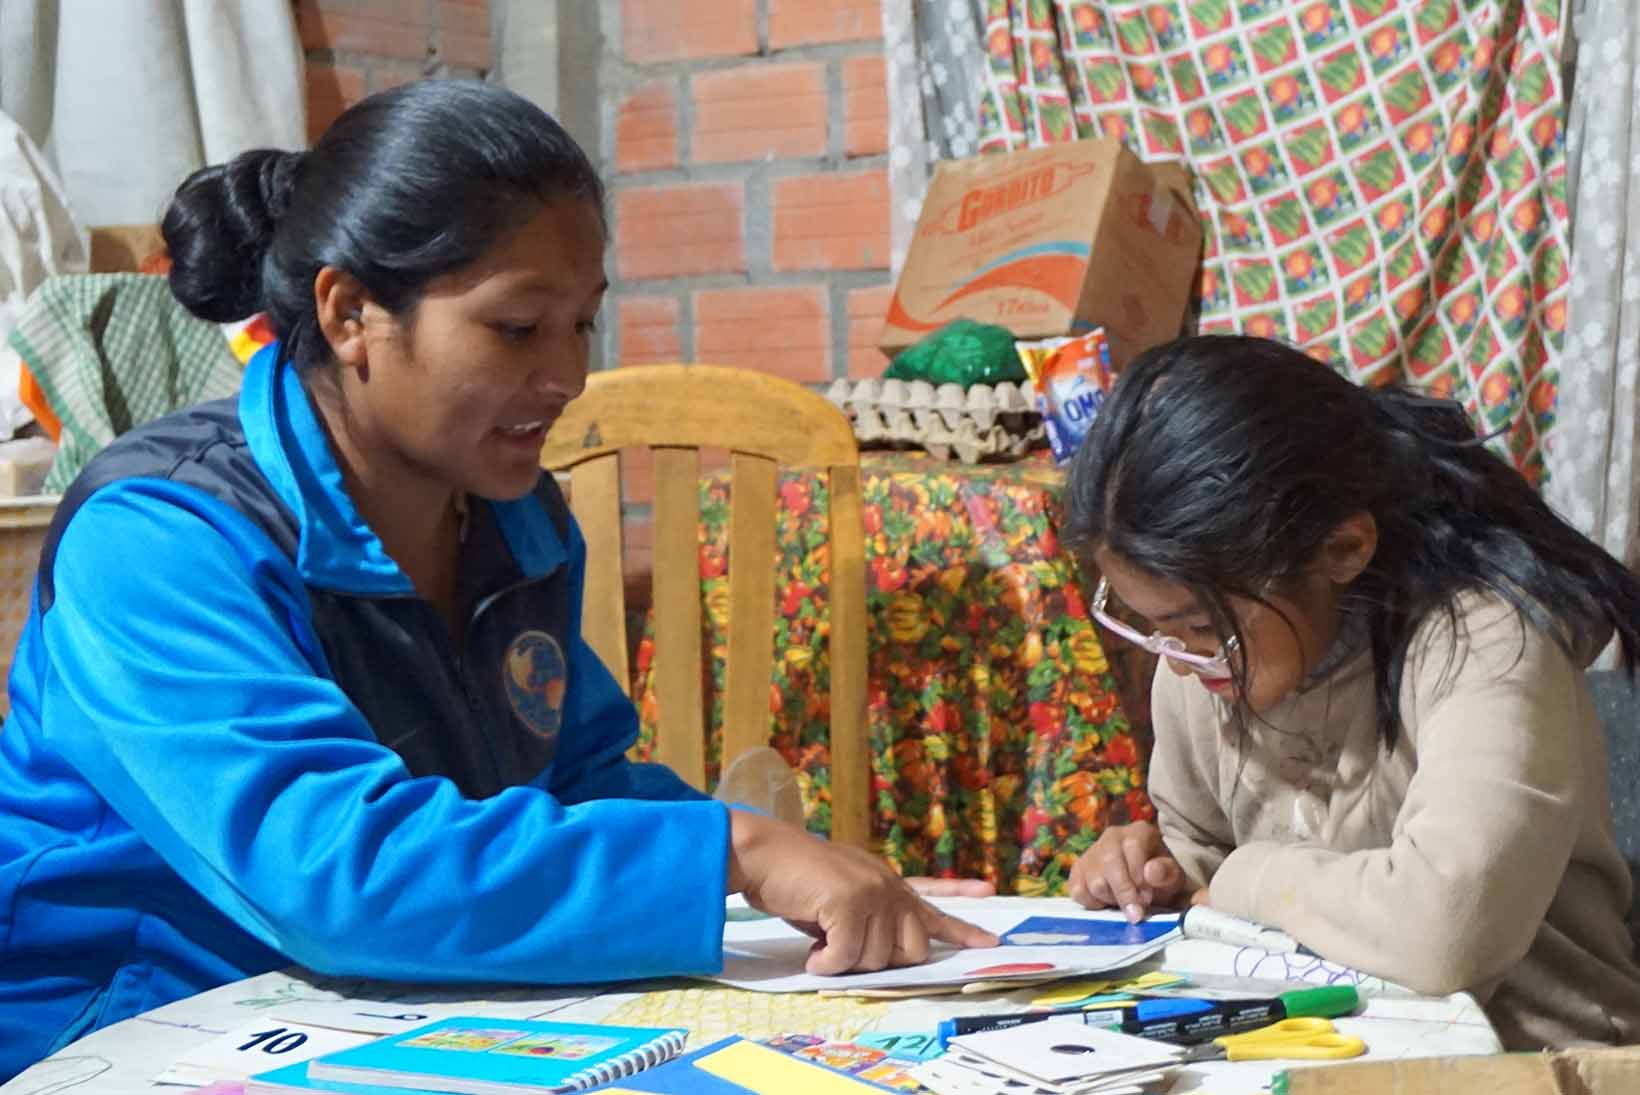 Assise à une table, une fillette bolivienne souffrant d’un déficit d’apprentissage fait ses devoirs en compagnie d’une femme qui lui donne des leçons de soutien.